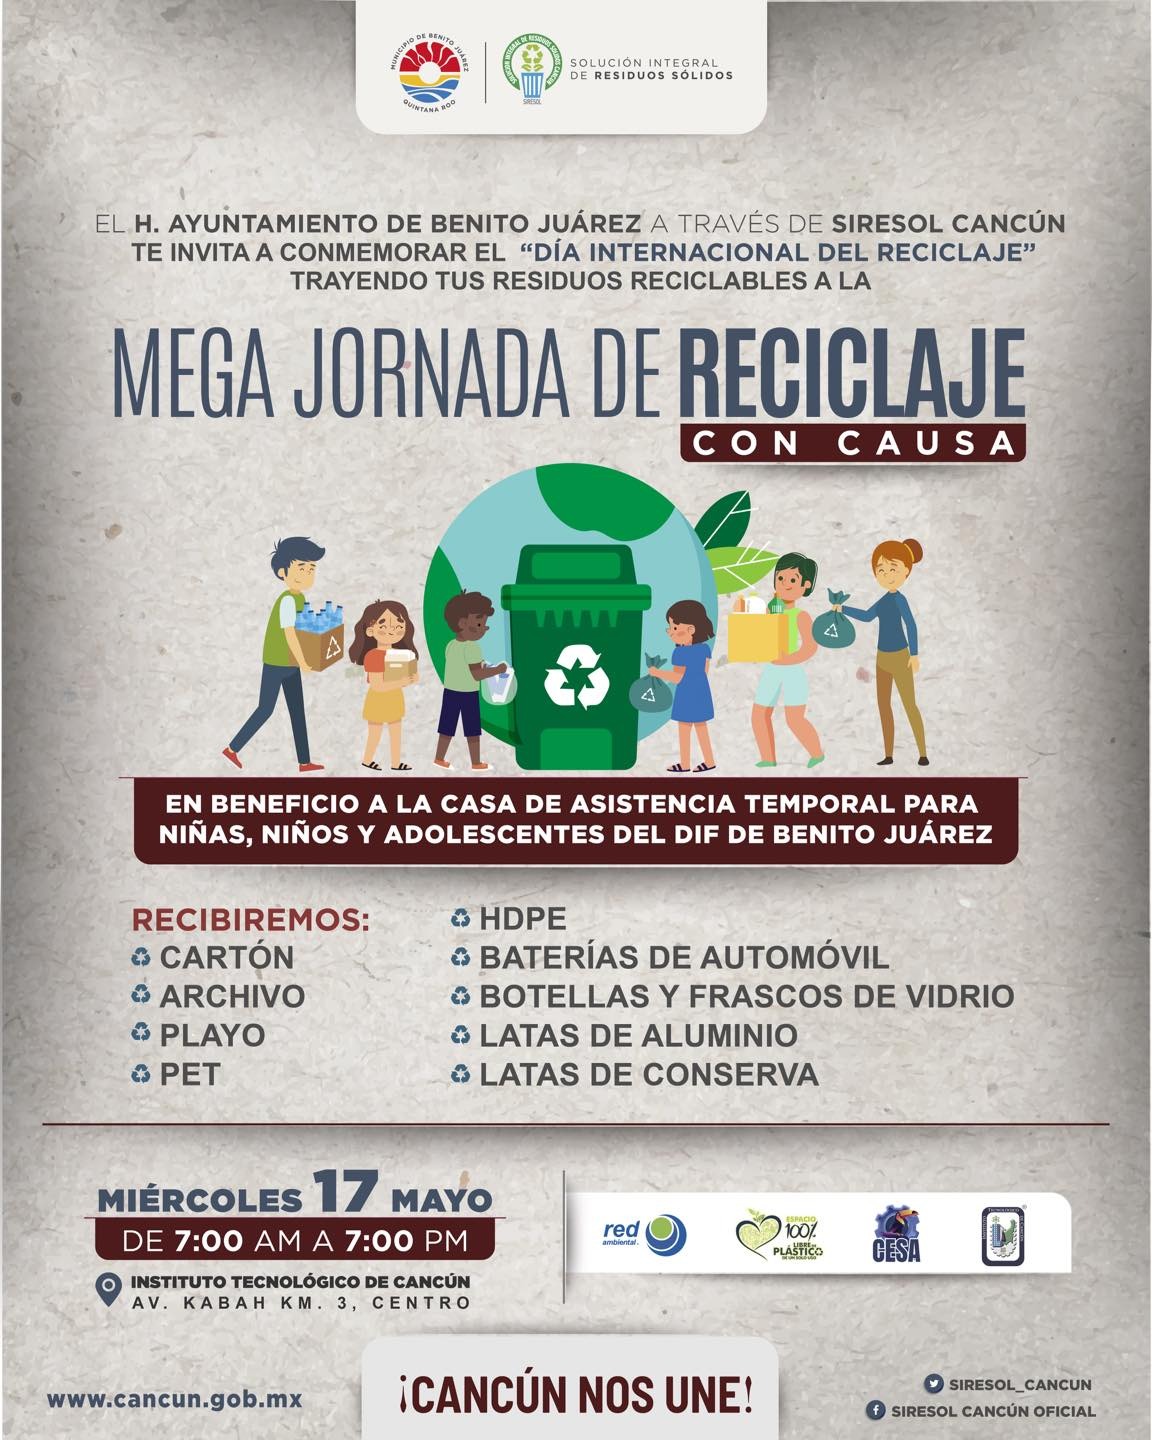 Invita gobierno de BJ a mega jornada de reciclaje